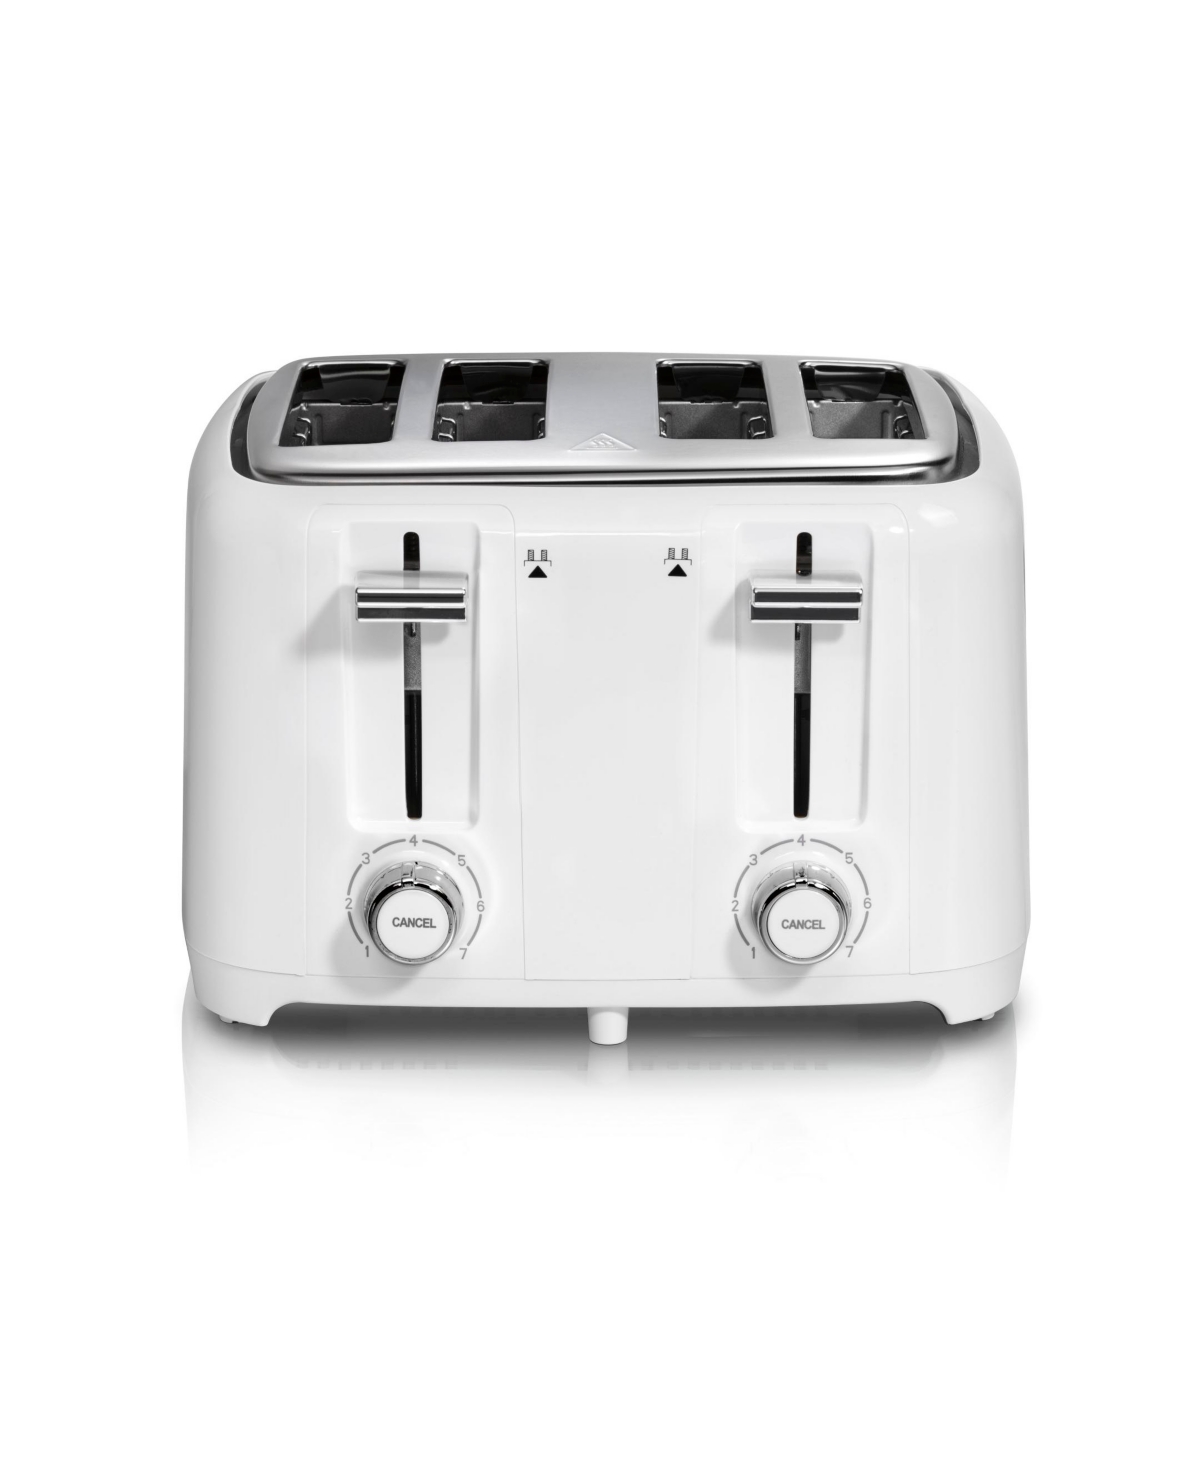 Hamilton Beach Toaster In White